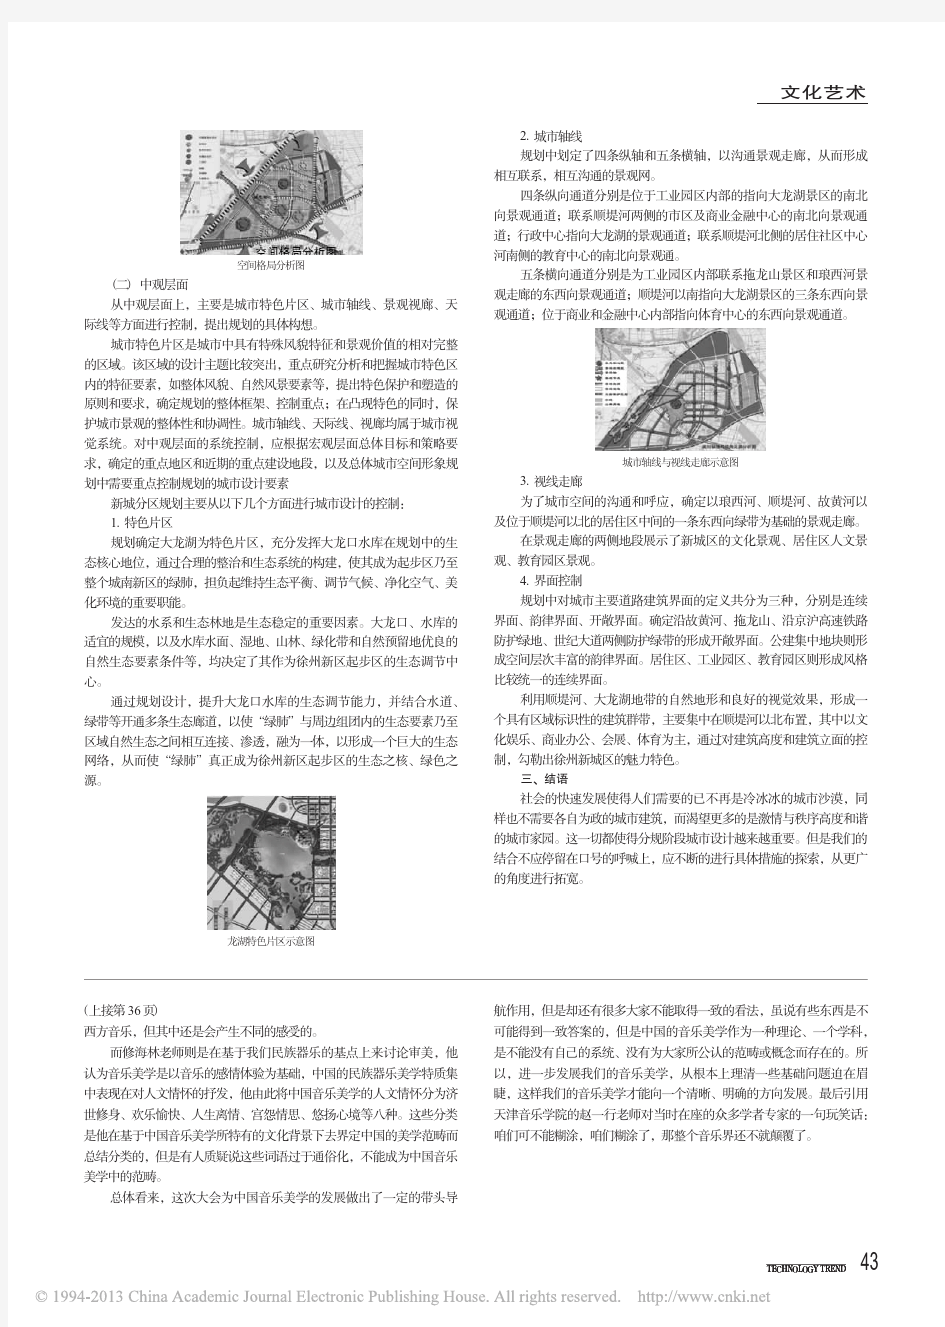 新城分区规划中城市设计的运用_以徐州市新城区为例